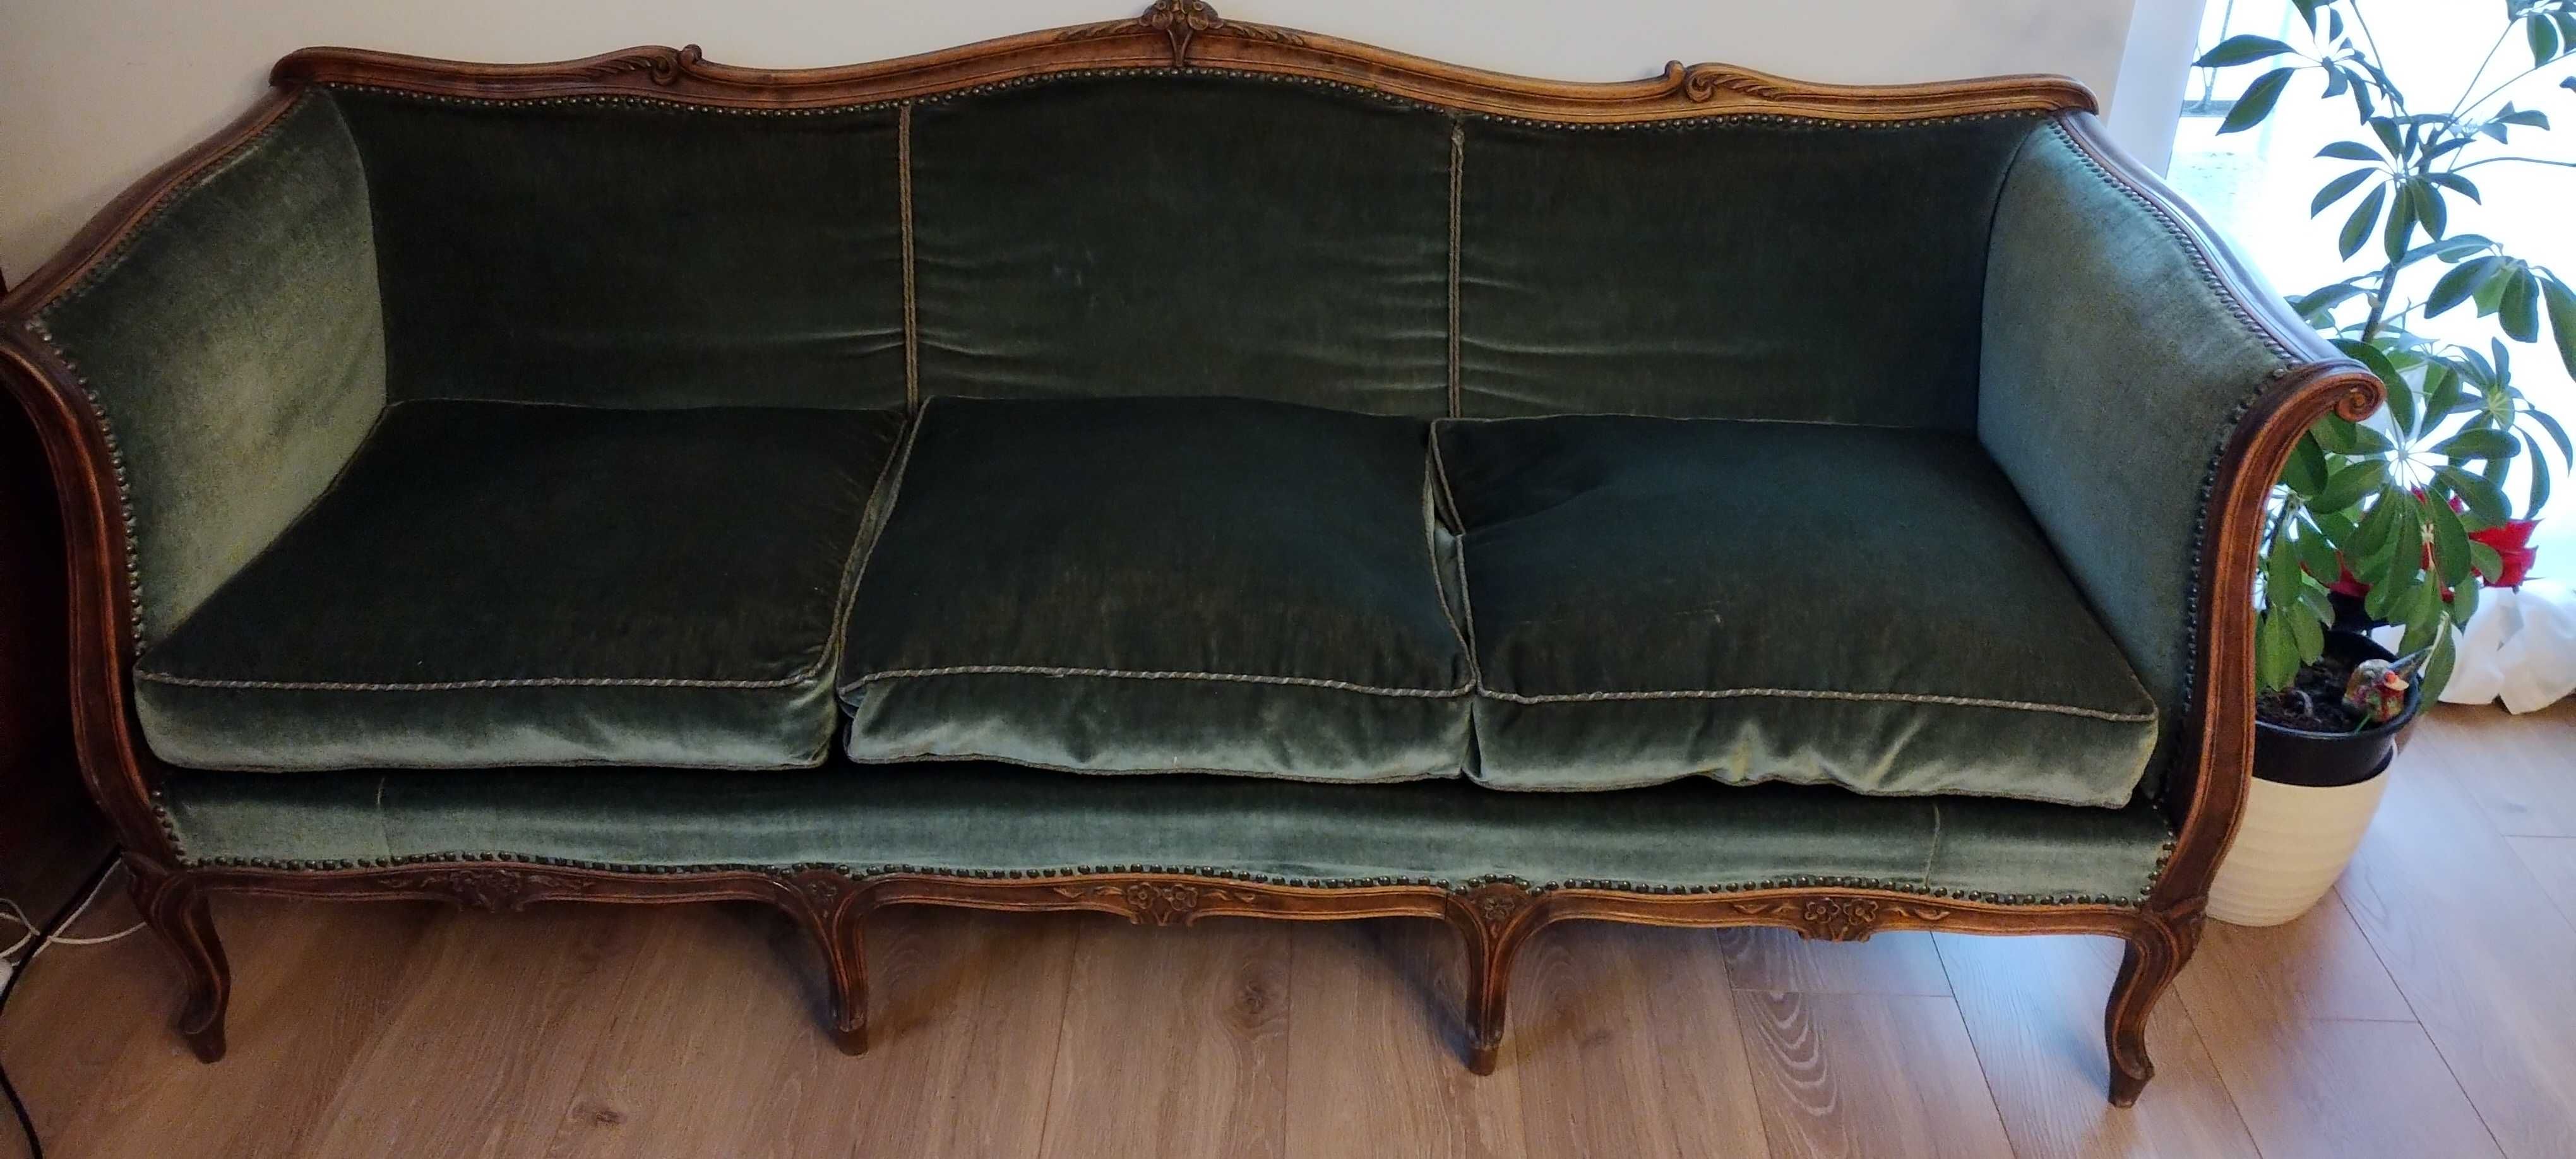 kanapa ludwikowska sofa